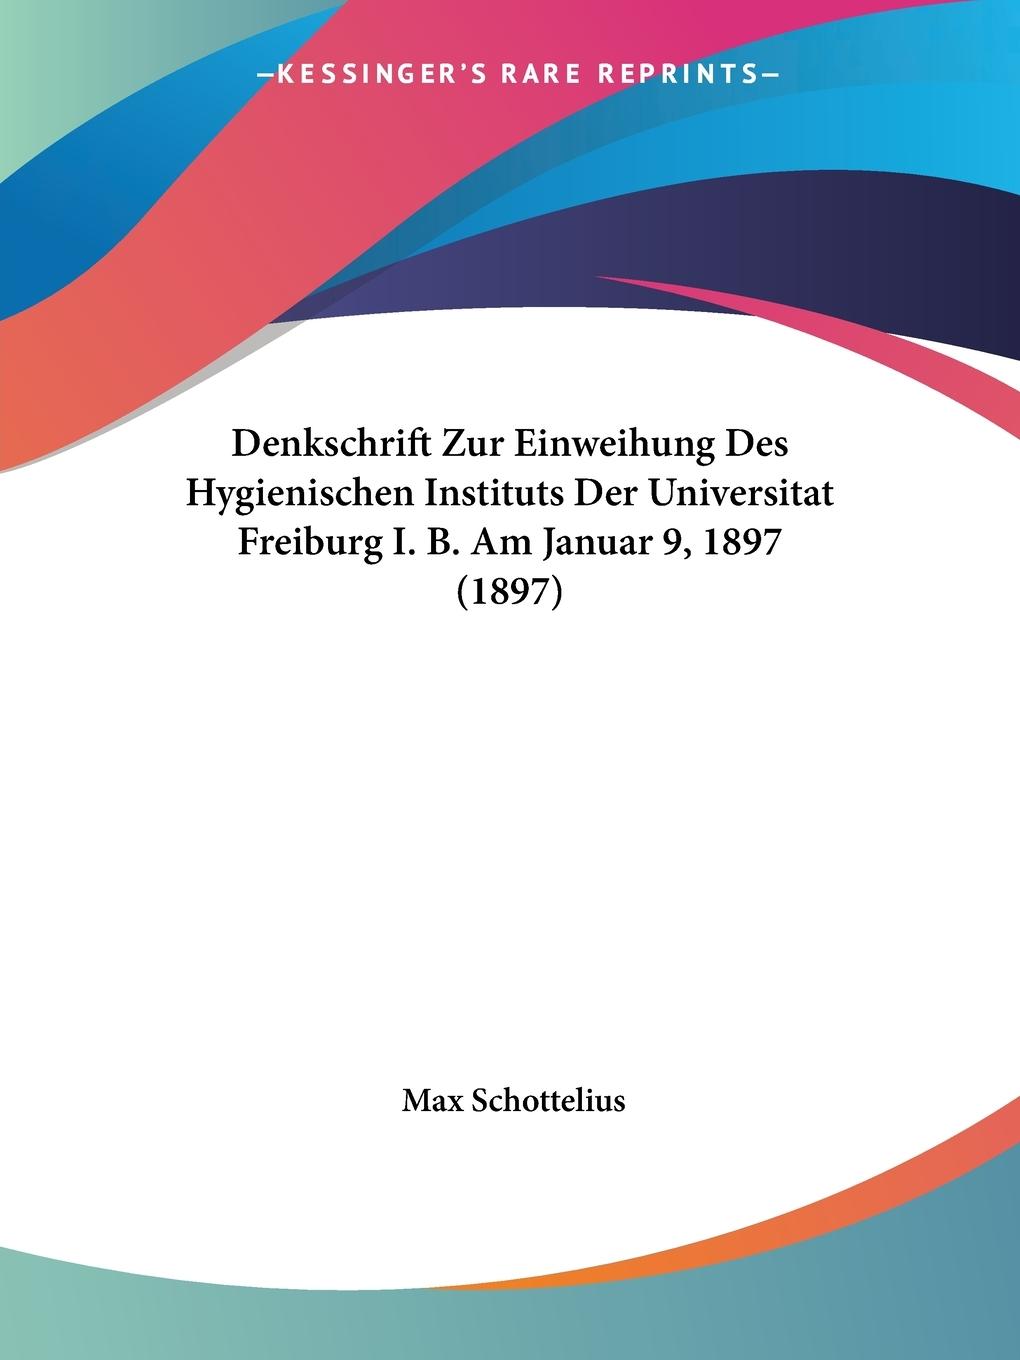 Denkschrift Zur Einweihung Des Hygienischen Instituts Der Universitat Freiburg I. B. Am Januar 9, 1897 (1897) - Schottelius, Max